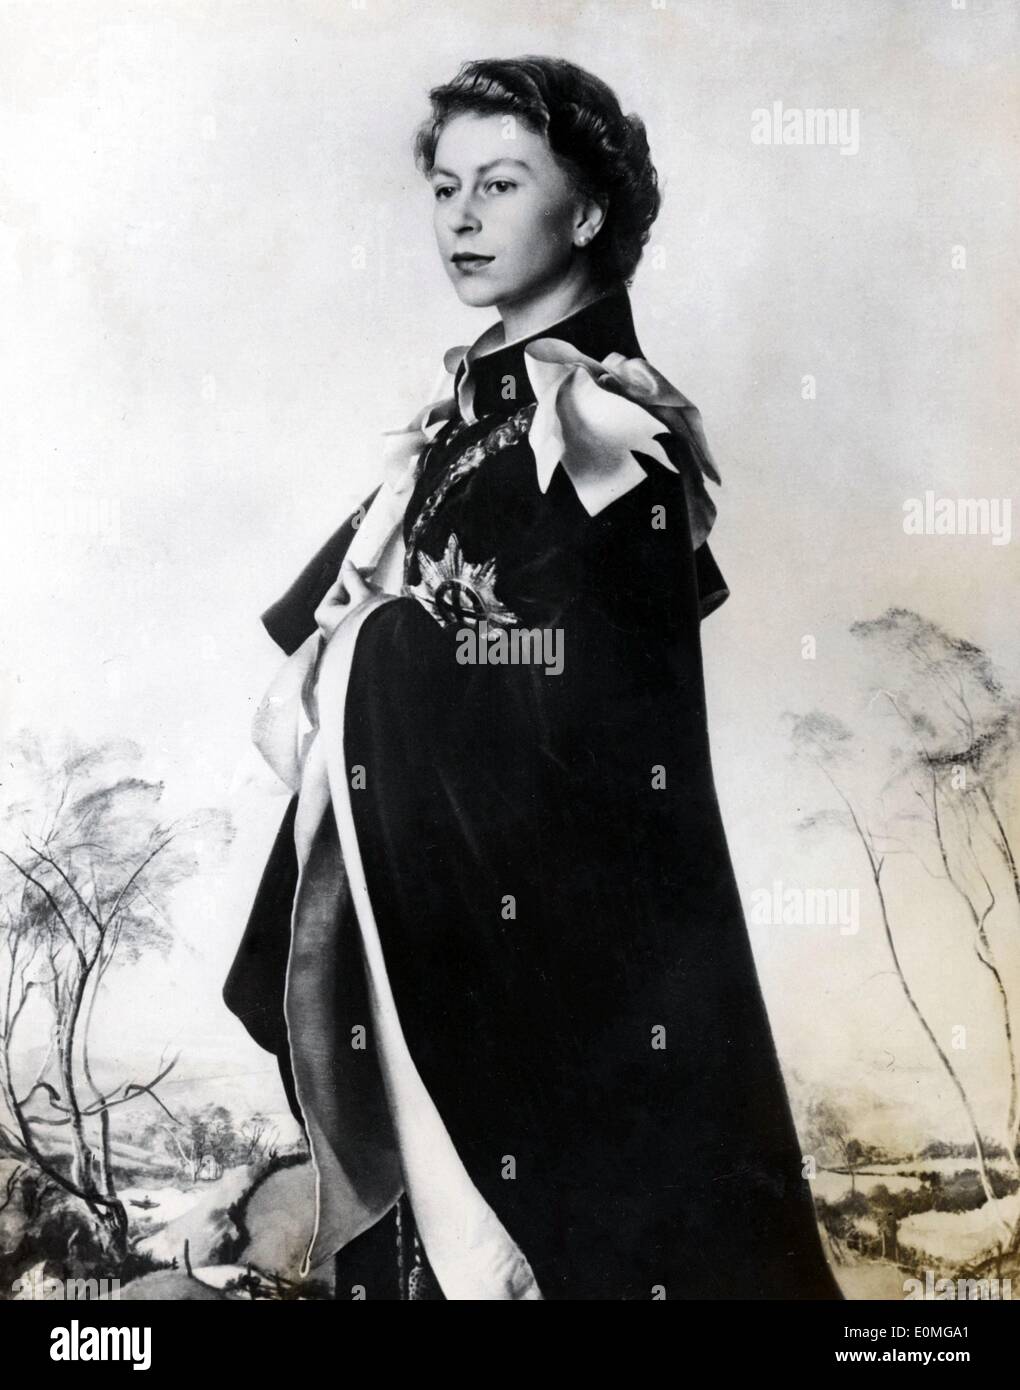 Mar 18, 1955 - Londra, Inghilterra, Regno Unito - Il ritratto di Sua Altezza Reale la regina Elisabetta II dipinto dal famoso artista italiano Pietro Annigoni. Nella pittura la regina indossa Garter accappatoi e ha preso l'artista quattro mesi per completare l'opera d'arte. Foto Stock